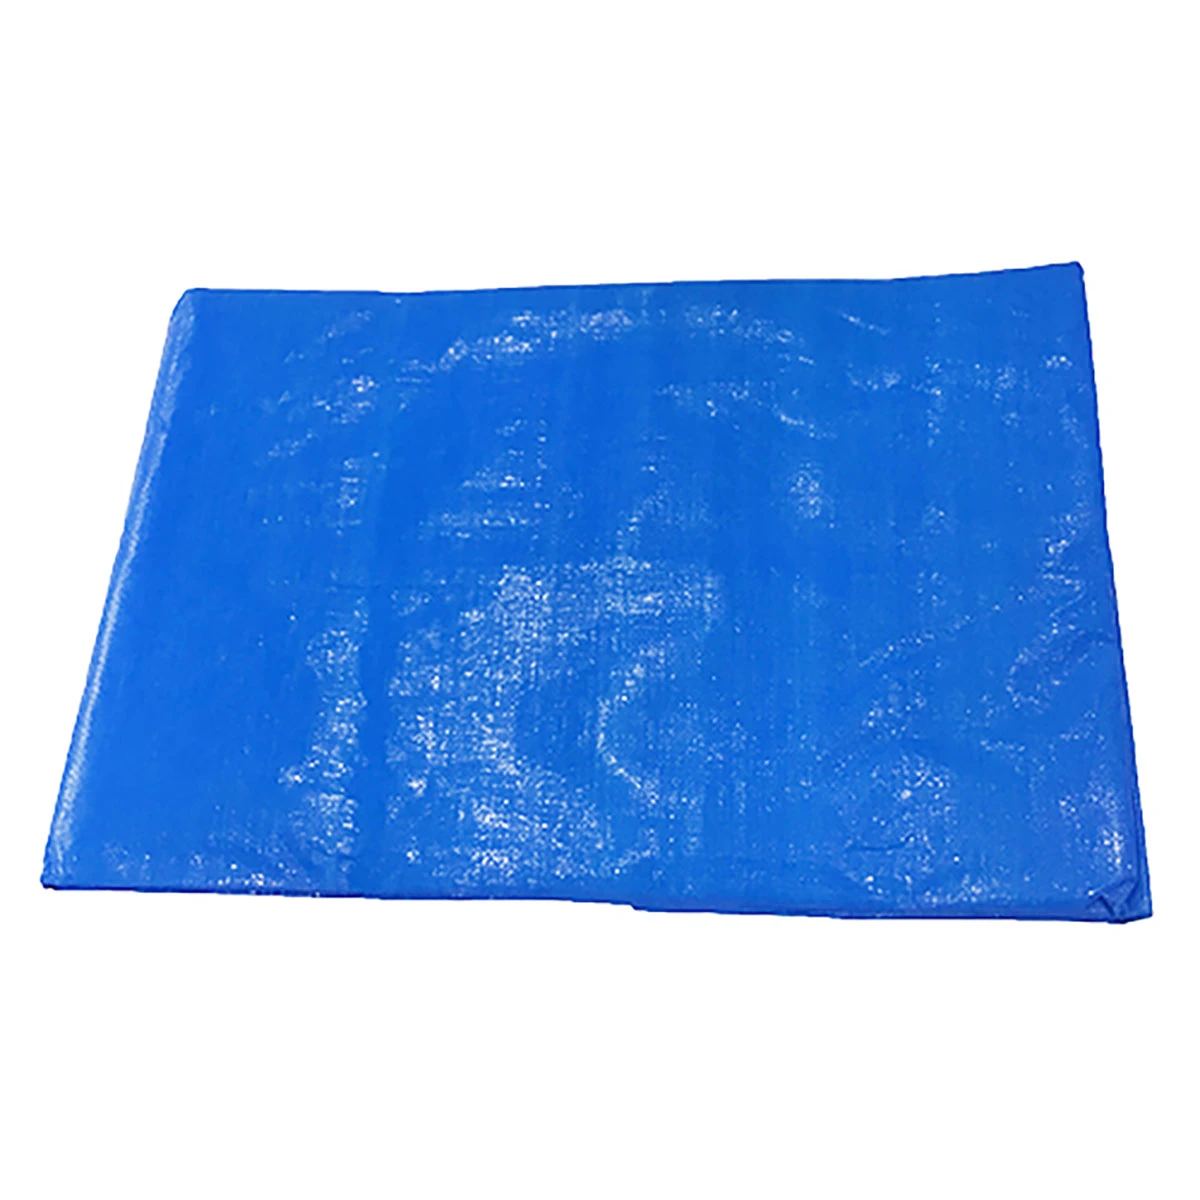 公式】パーマンショップ-ブルーシート 巾約3.4×長さ約5.2m #3000: 物流設備・資材関連｜トラック用品、大型車・物流用品通販サイト